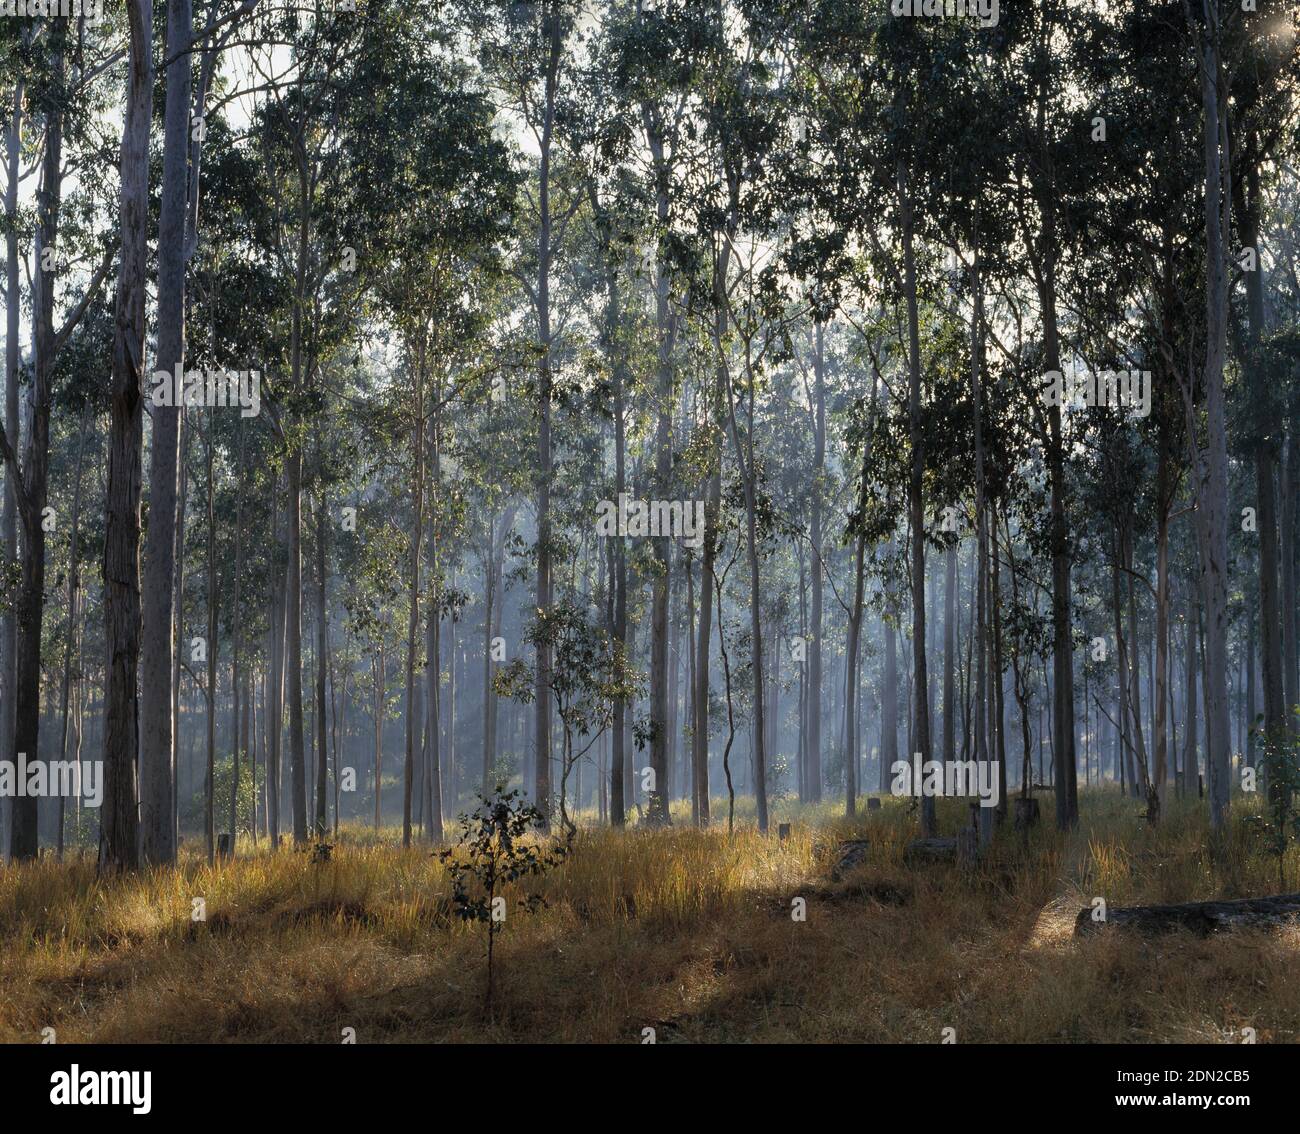 Australia. New South Wales. Eucalyptus trees. Stock Photo